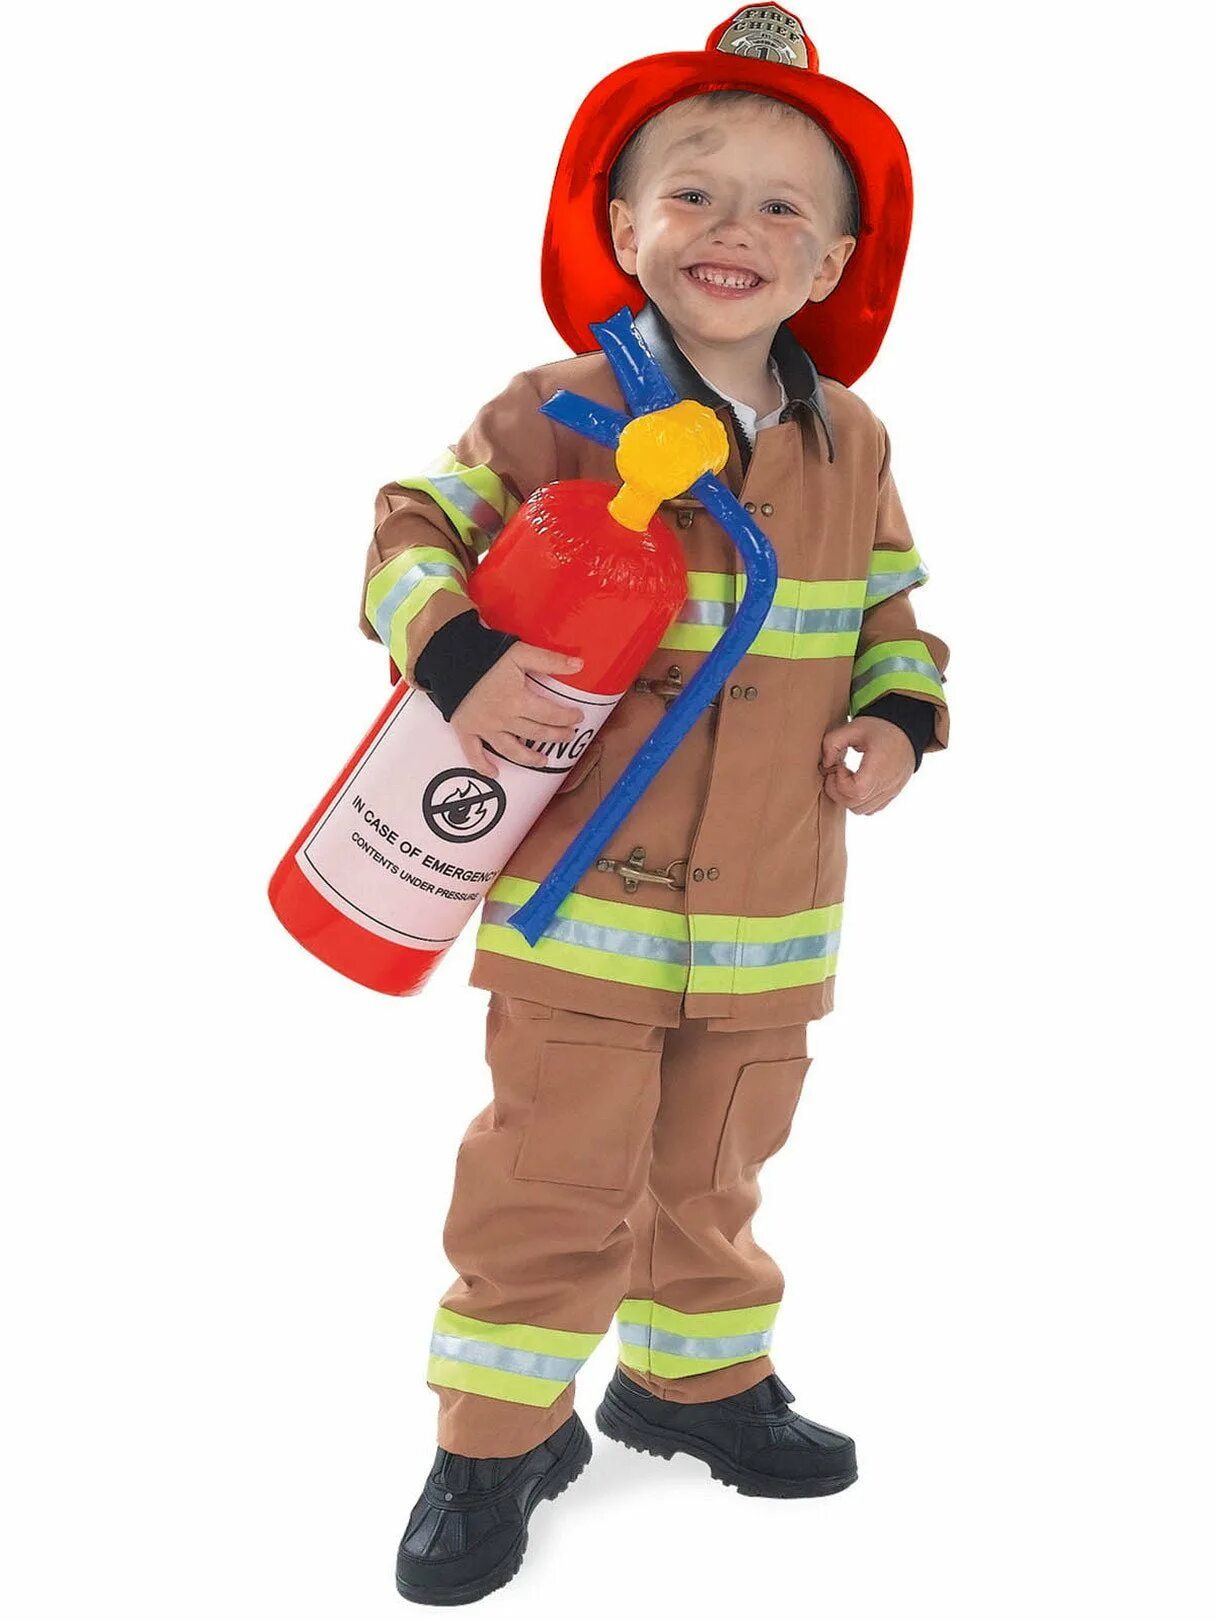 Как выглядит пожарник. Костюм пожарного для детей. Пожарный костюм для детей для детей. Для детей. Пожарные. Детские костюмы пожарника.